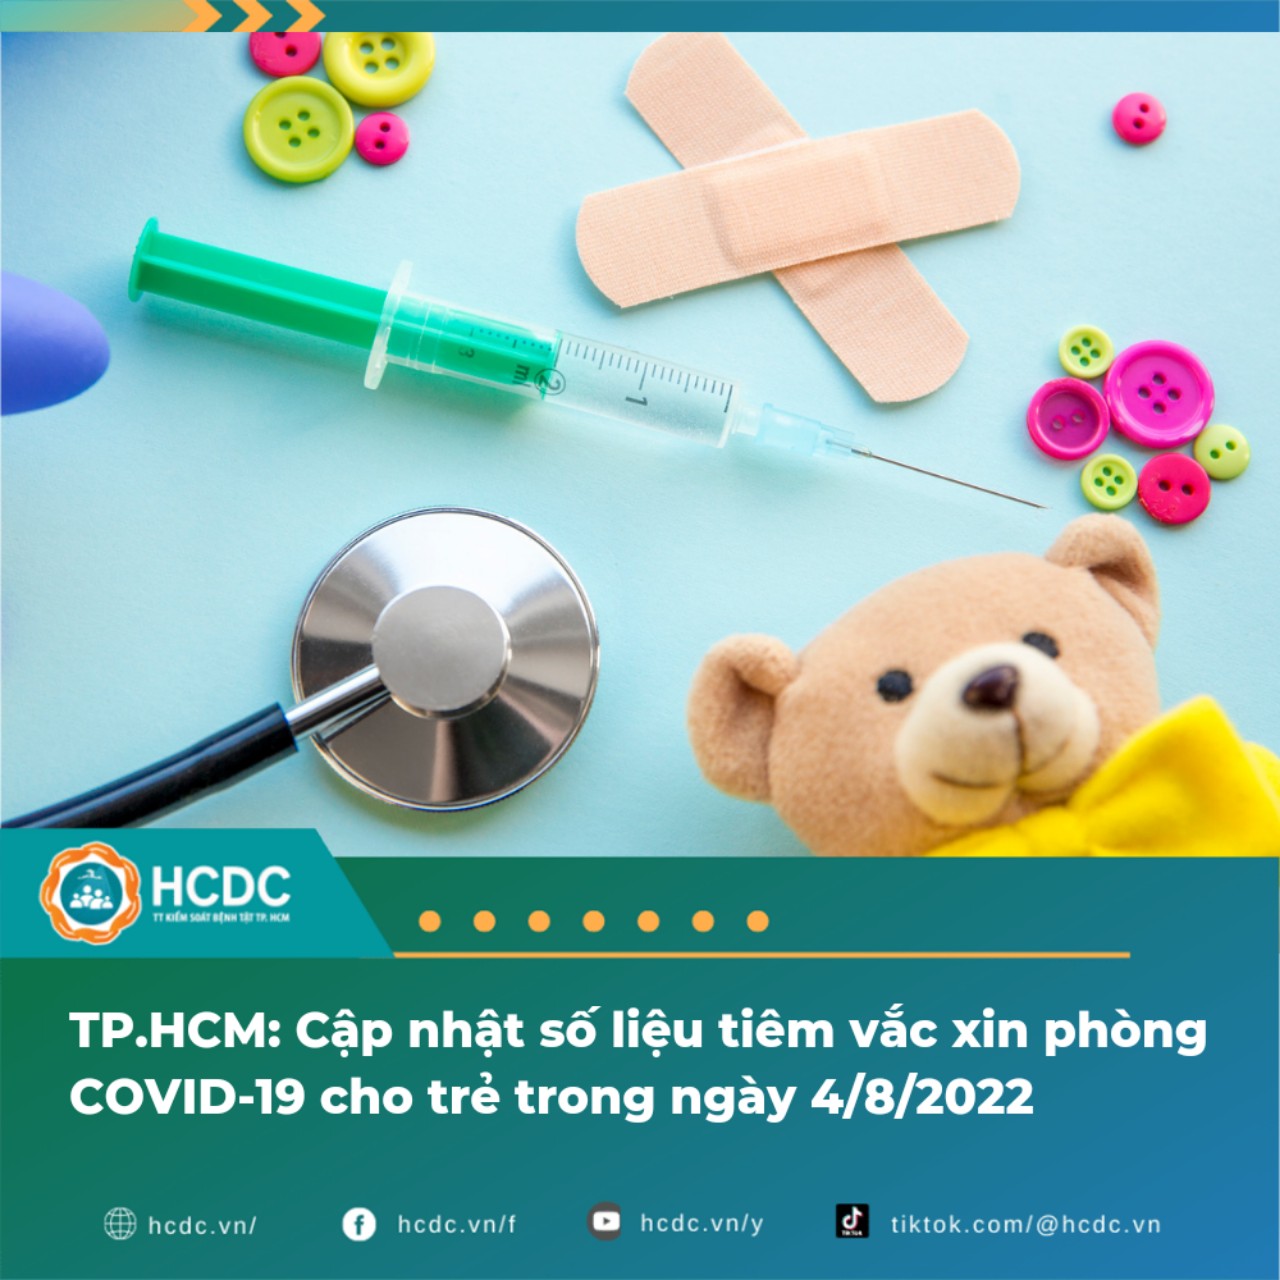 TP.HCM: Cập nhật số liệu tiêm vắc xin phòng COVID-19 cho trẻ trong ngày 4/8/2022